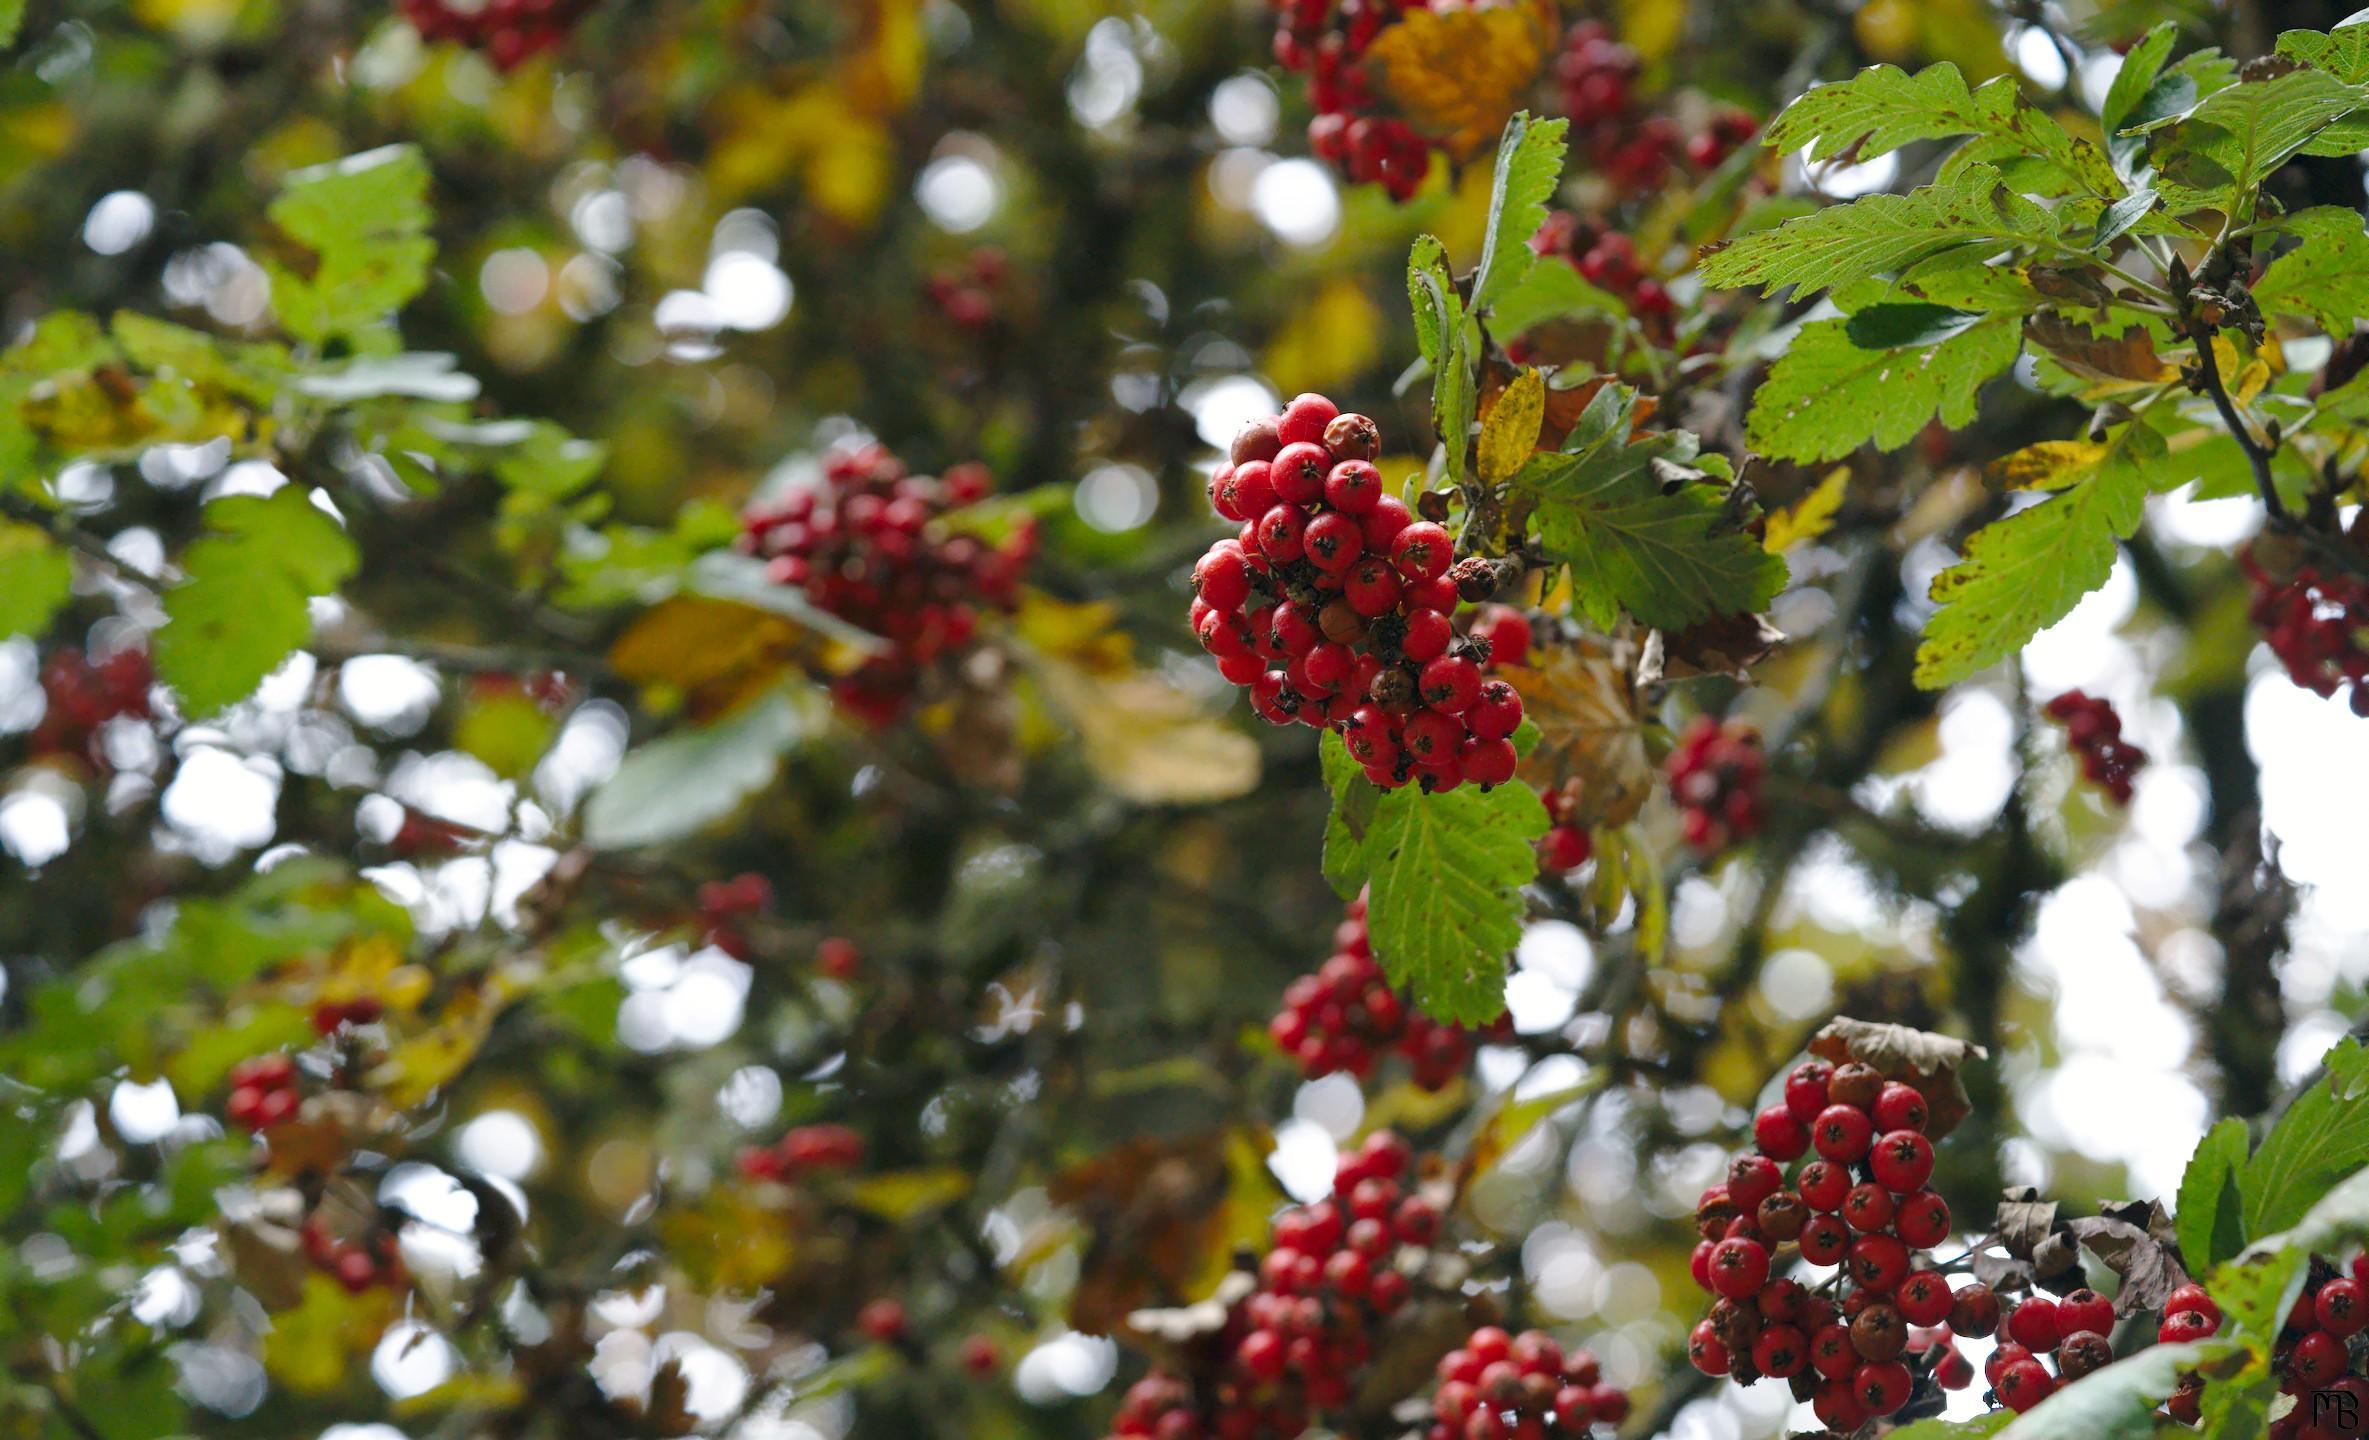 Berries on tree in sun